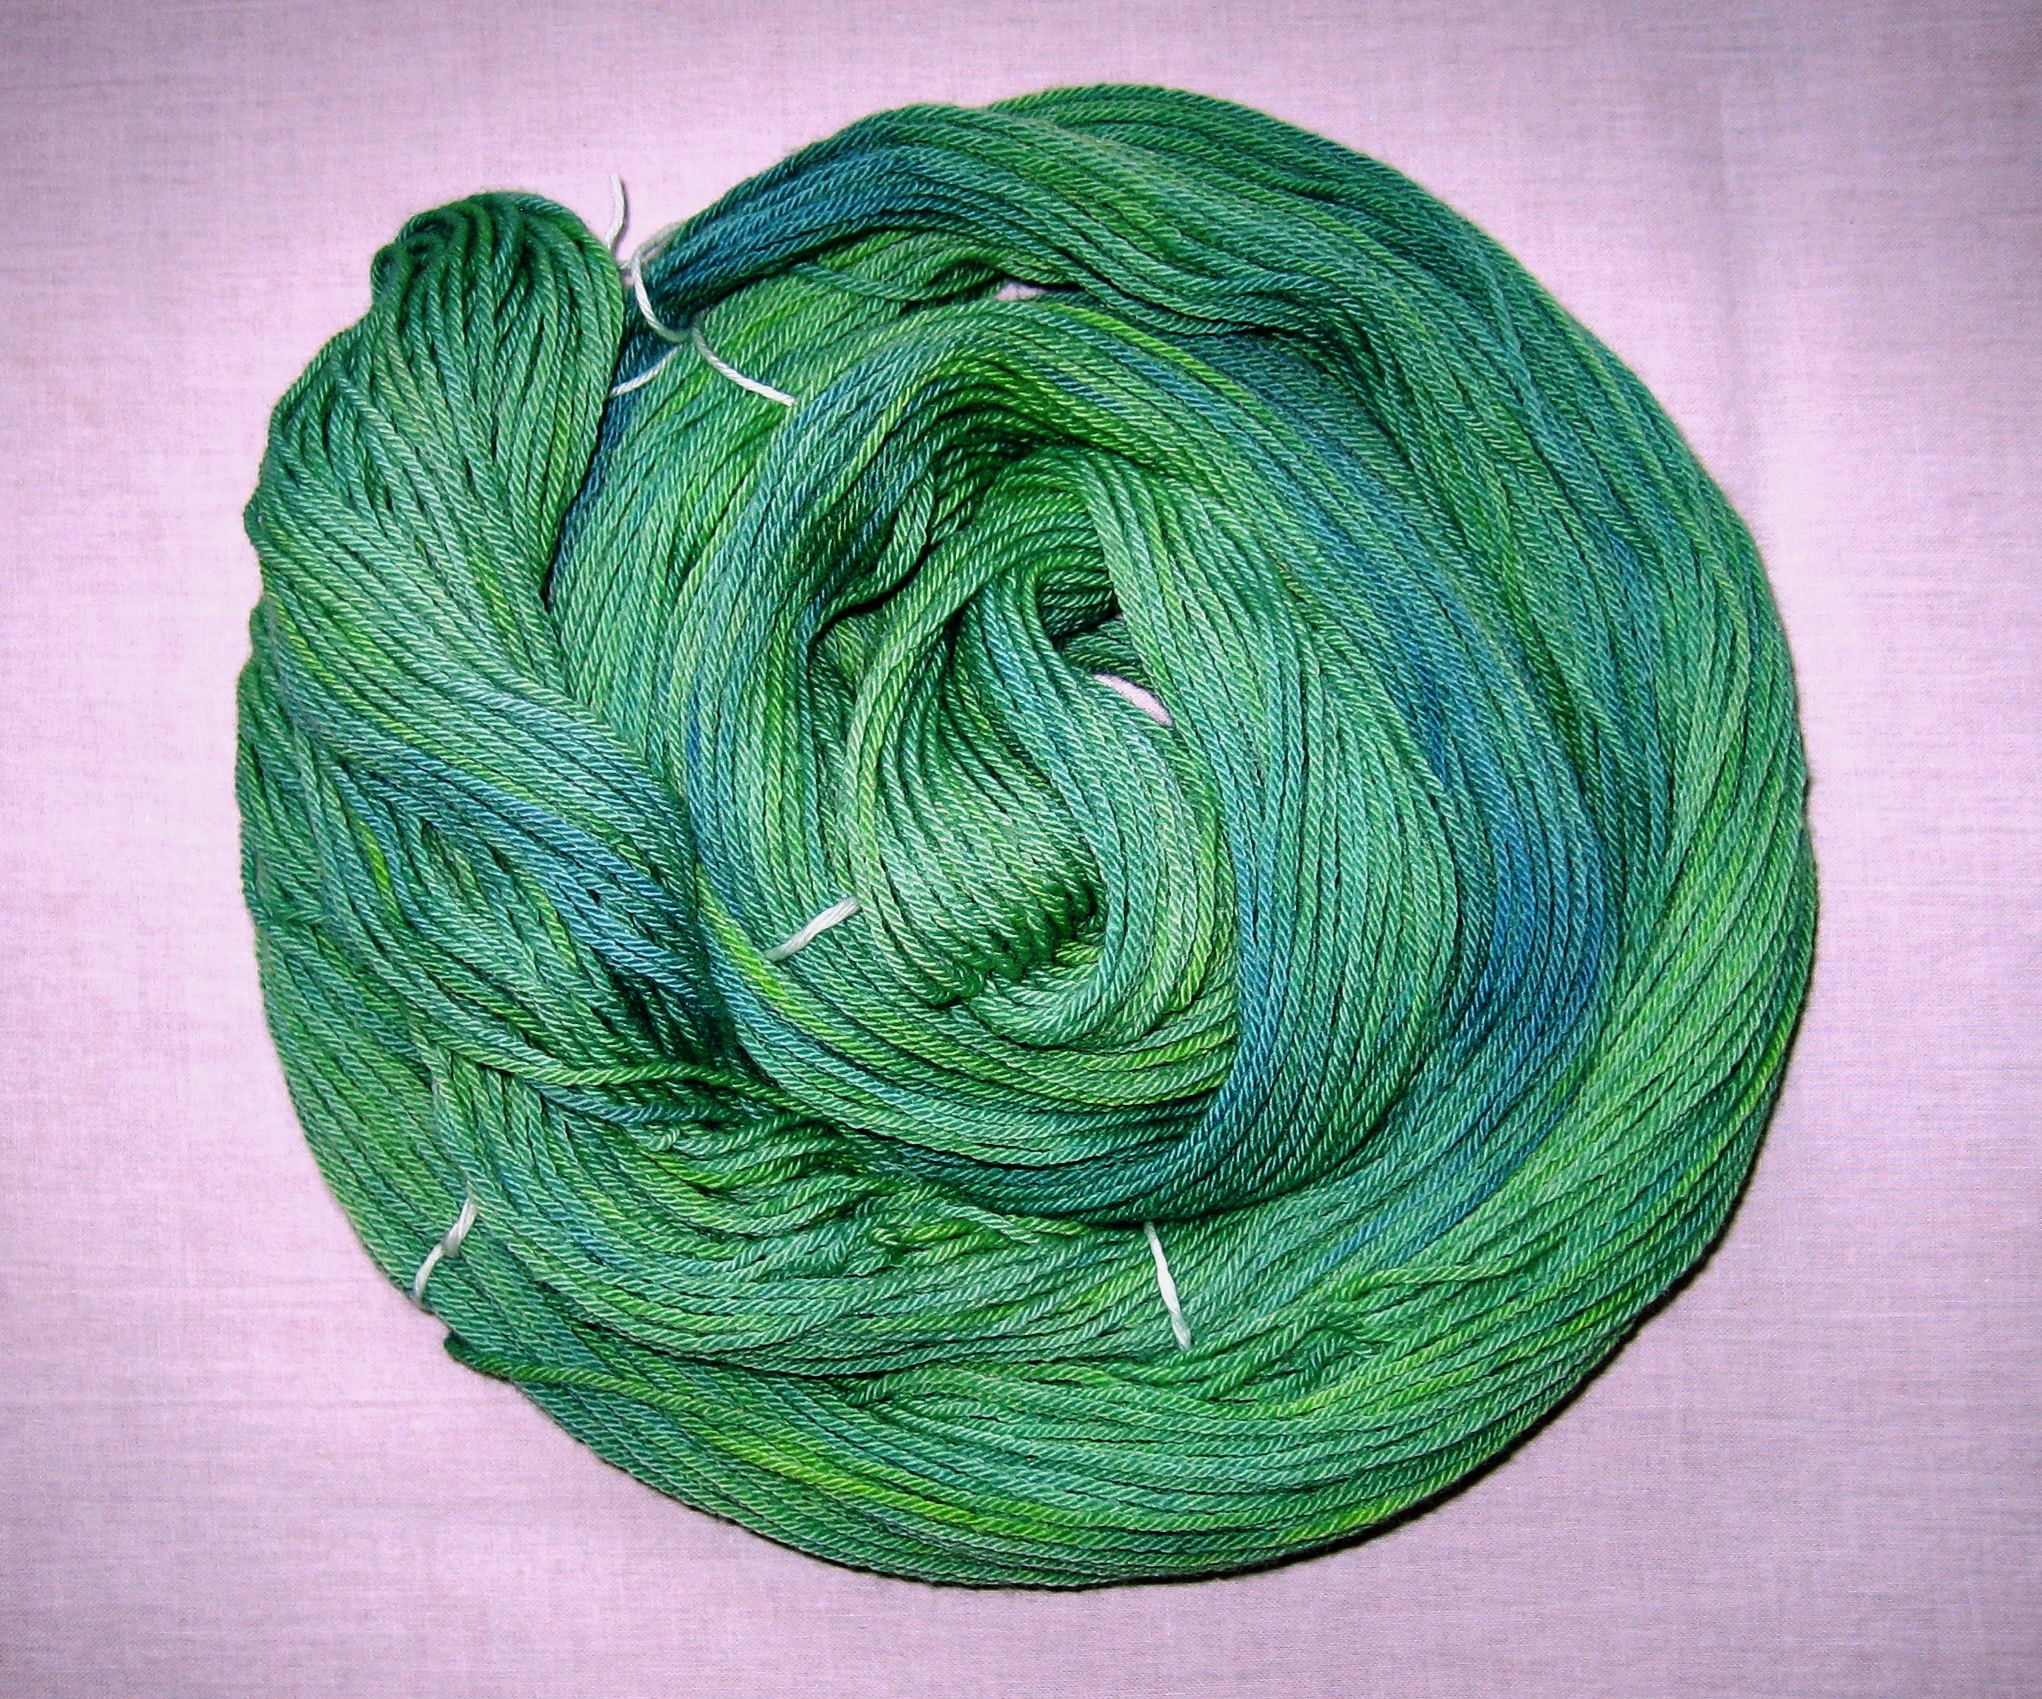 garnyarn-håndfarvet-garn-mellem-merinould-baeredygtig-groen